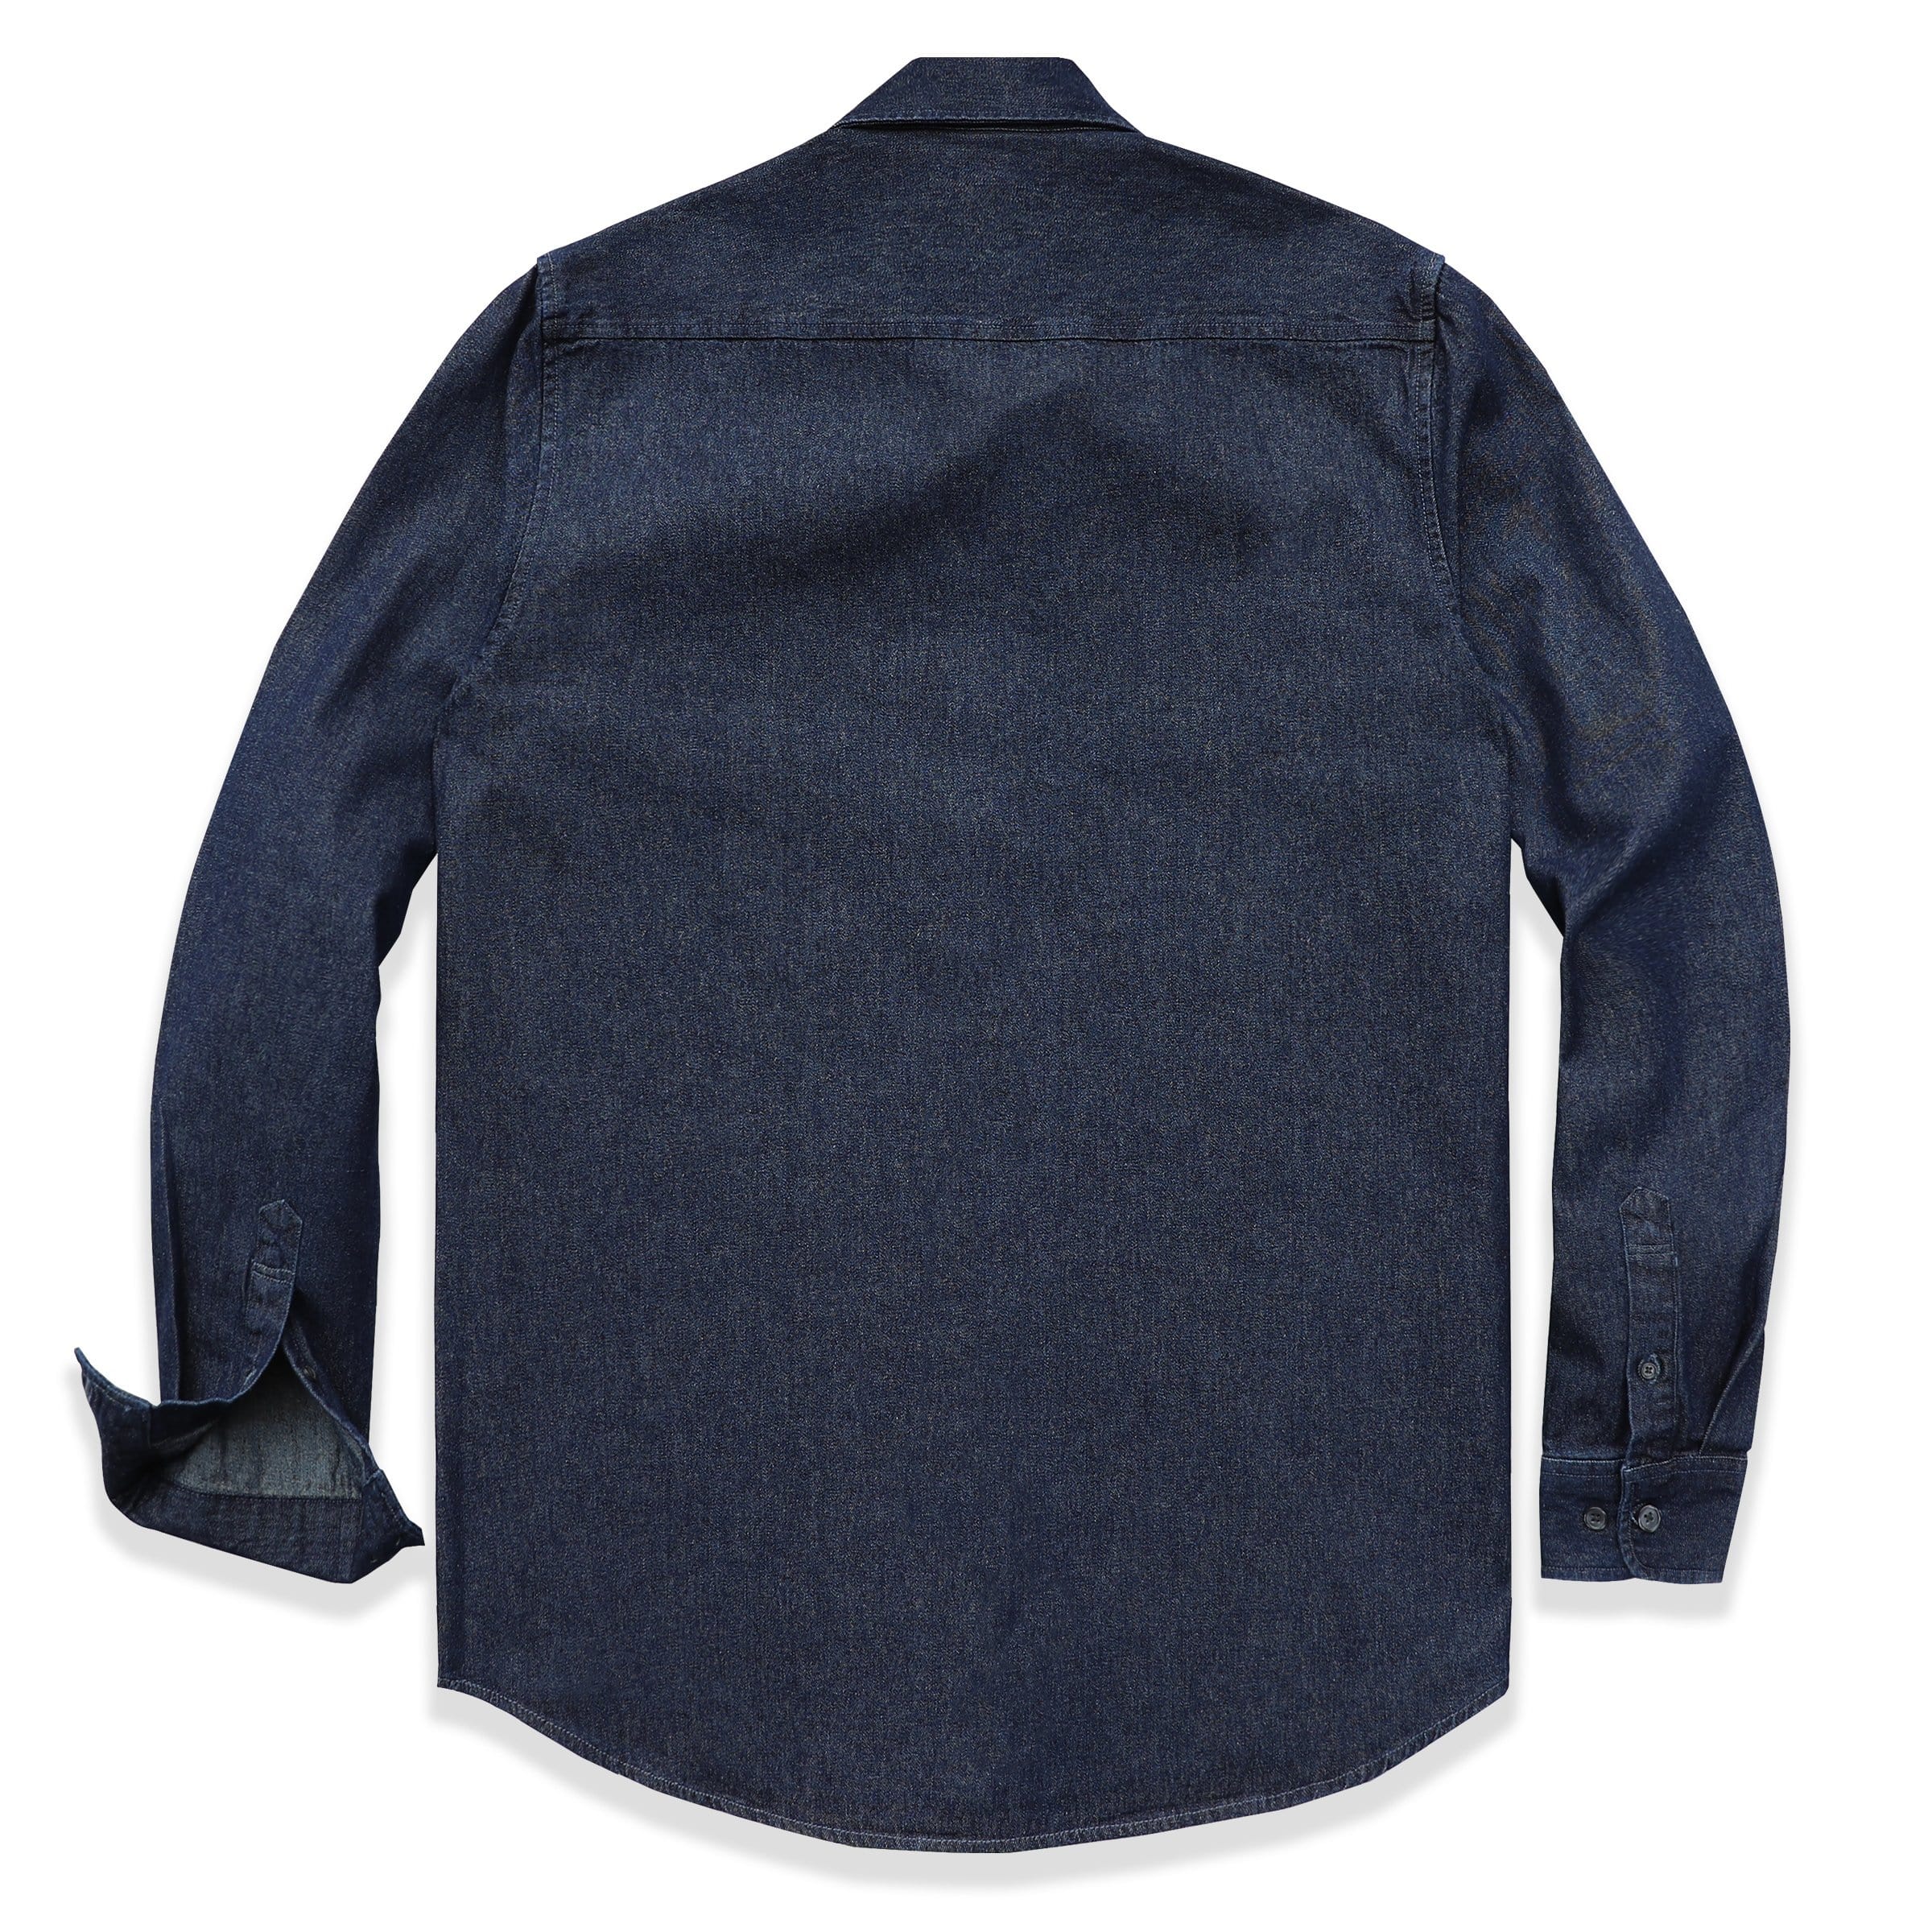 Men's cotton long sleeve denim shirt #4500